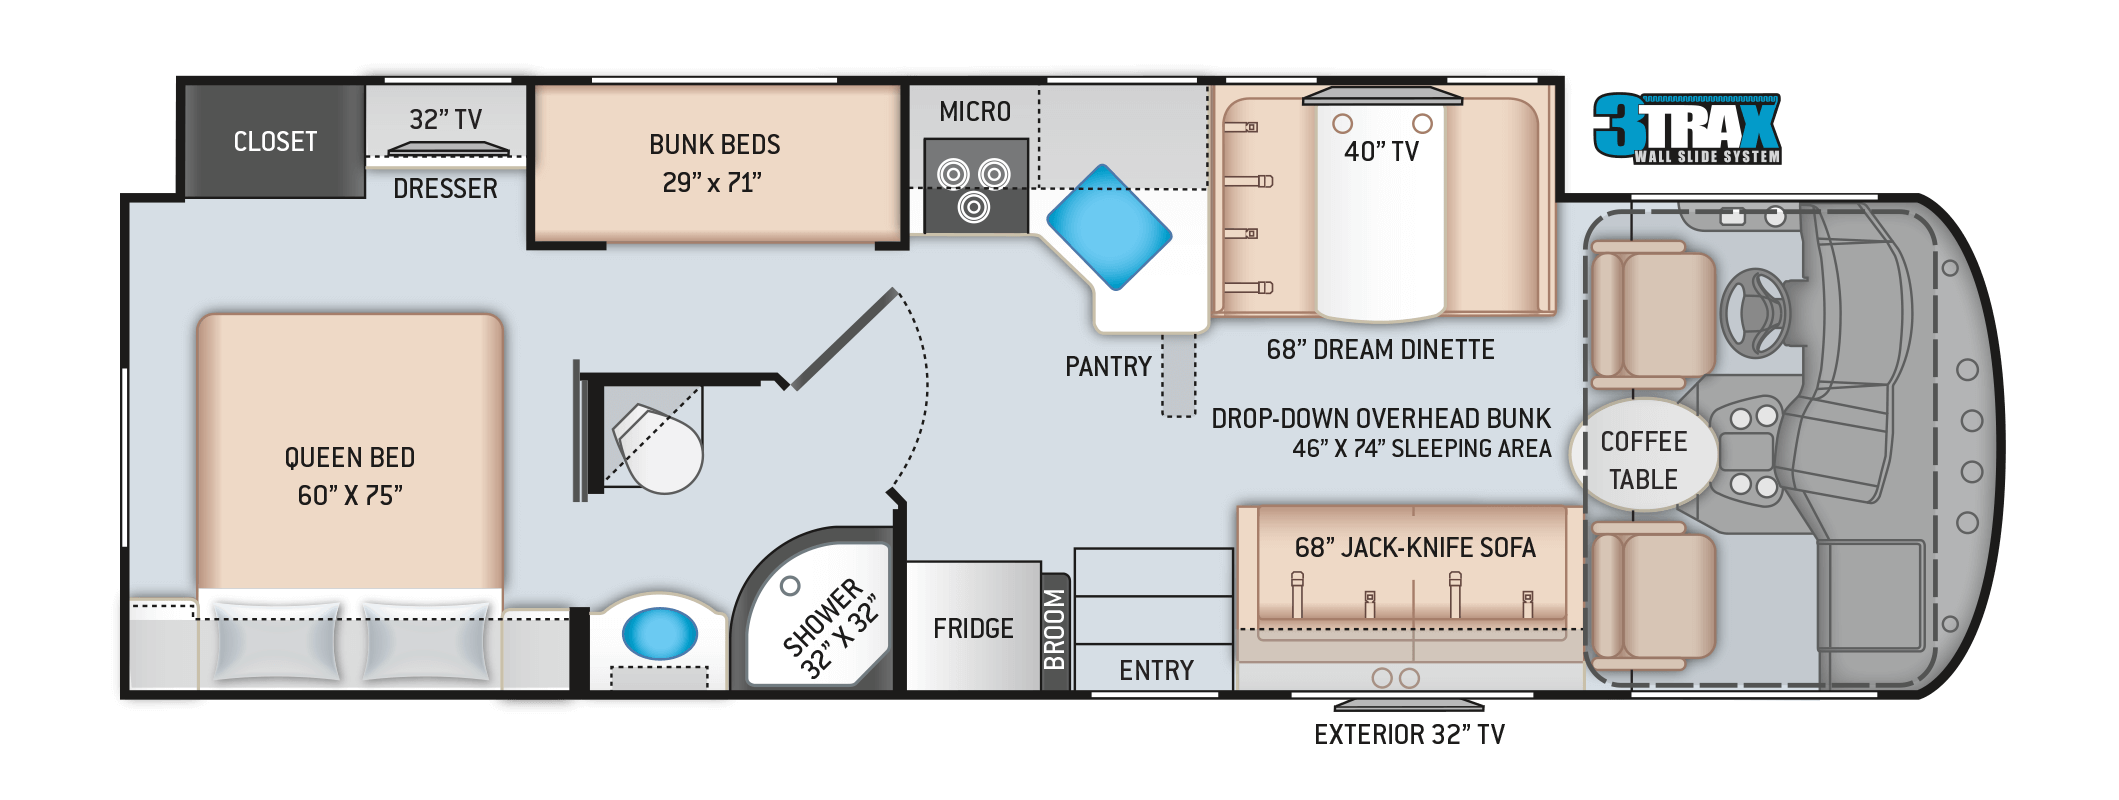 A.C.E. Class A Motorhome 30.2 Floor Plan